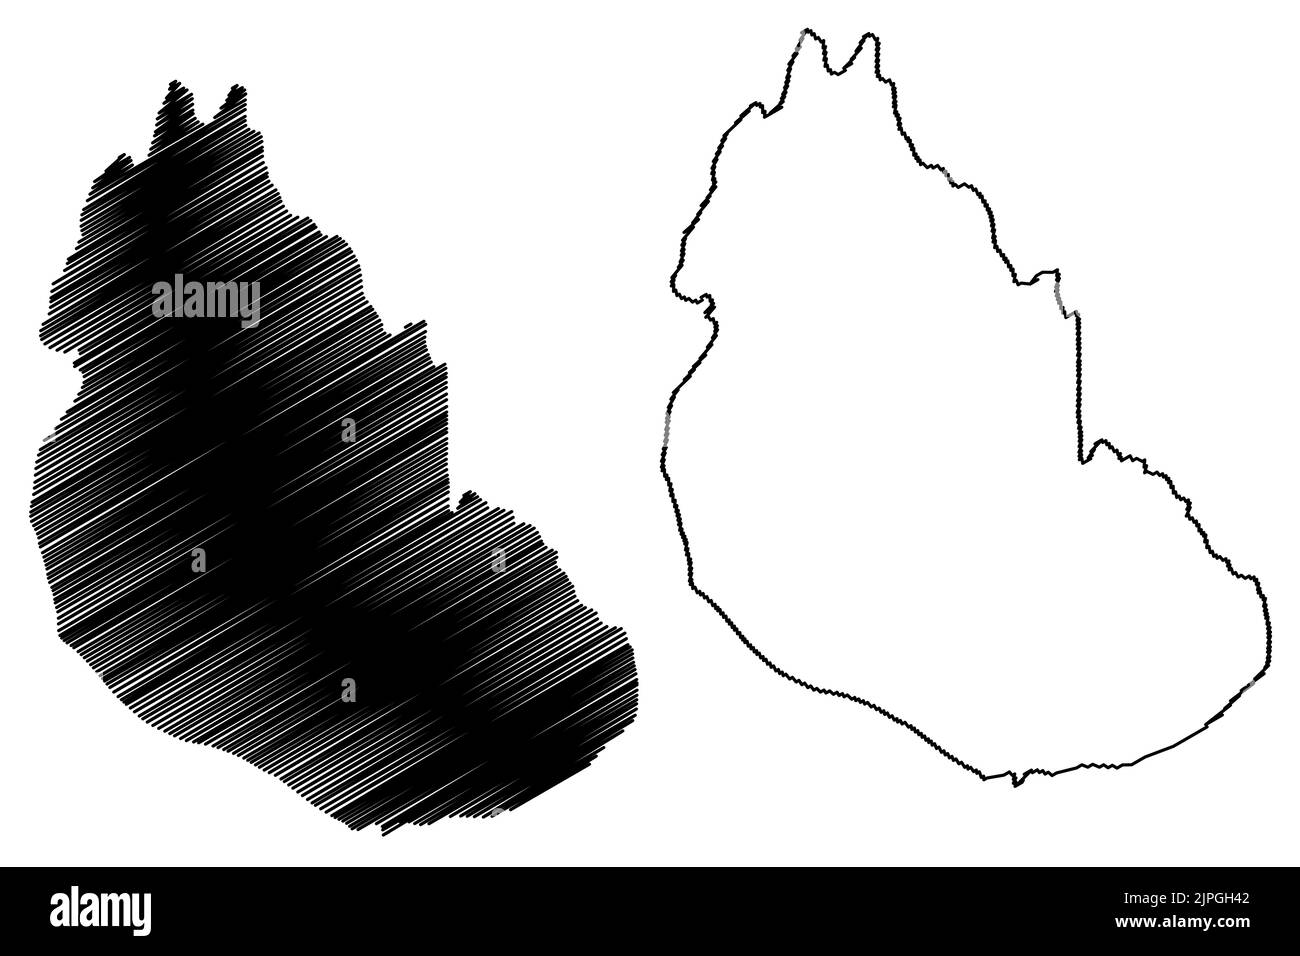 Vitello dell'isola di Eday (Regno Unito di Gran Bretagna e Irlanda del Nord, Scozia, Orkney) illustrazione vettoriale della mappa, schizza l'isola di Cauf o A. Illustrazione Vettoriale